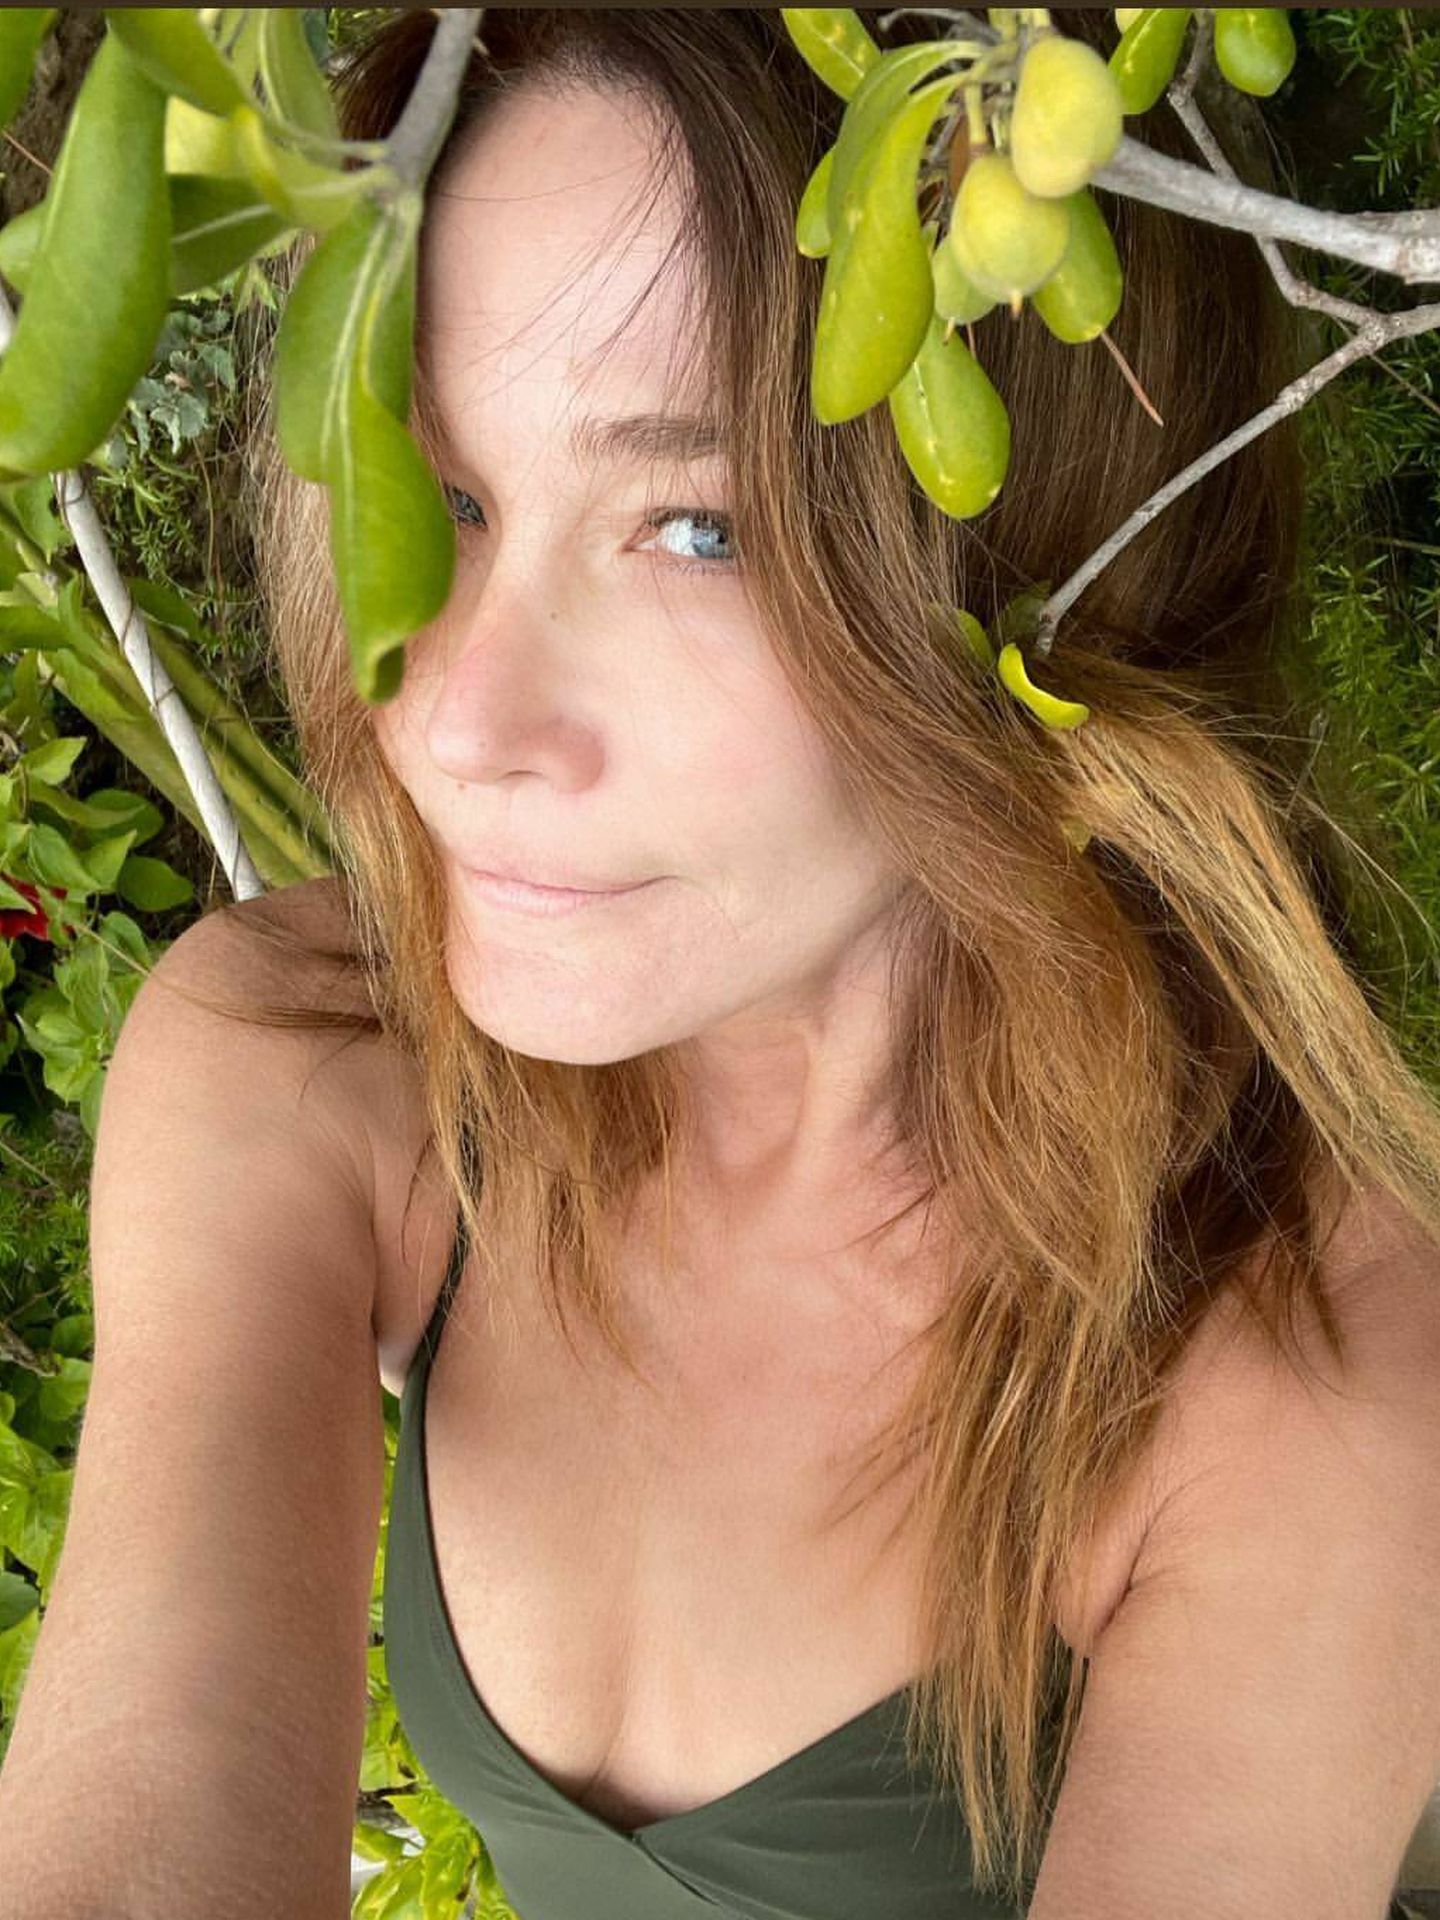 El último selfie de Carla Bruni, en su jardín y al natural. (Instagram @carlabruni)